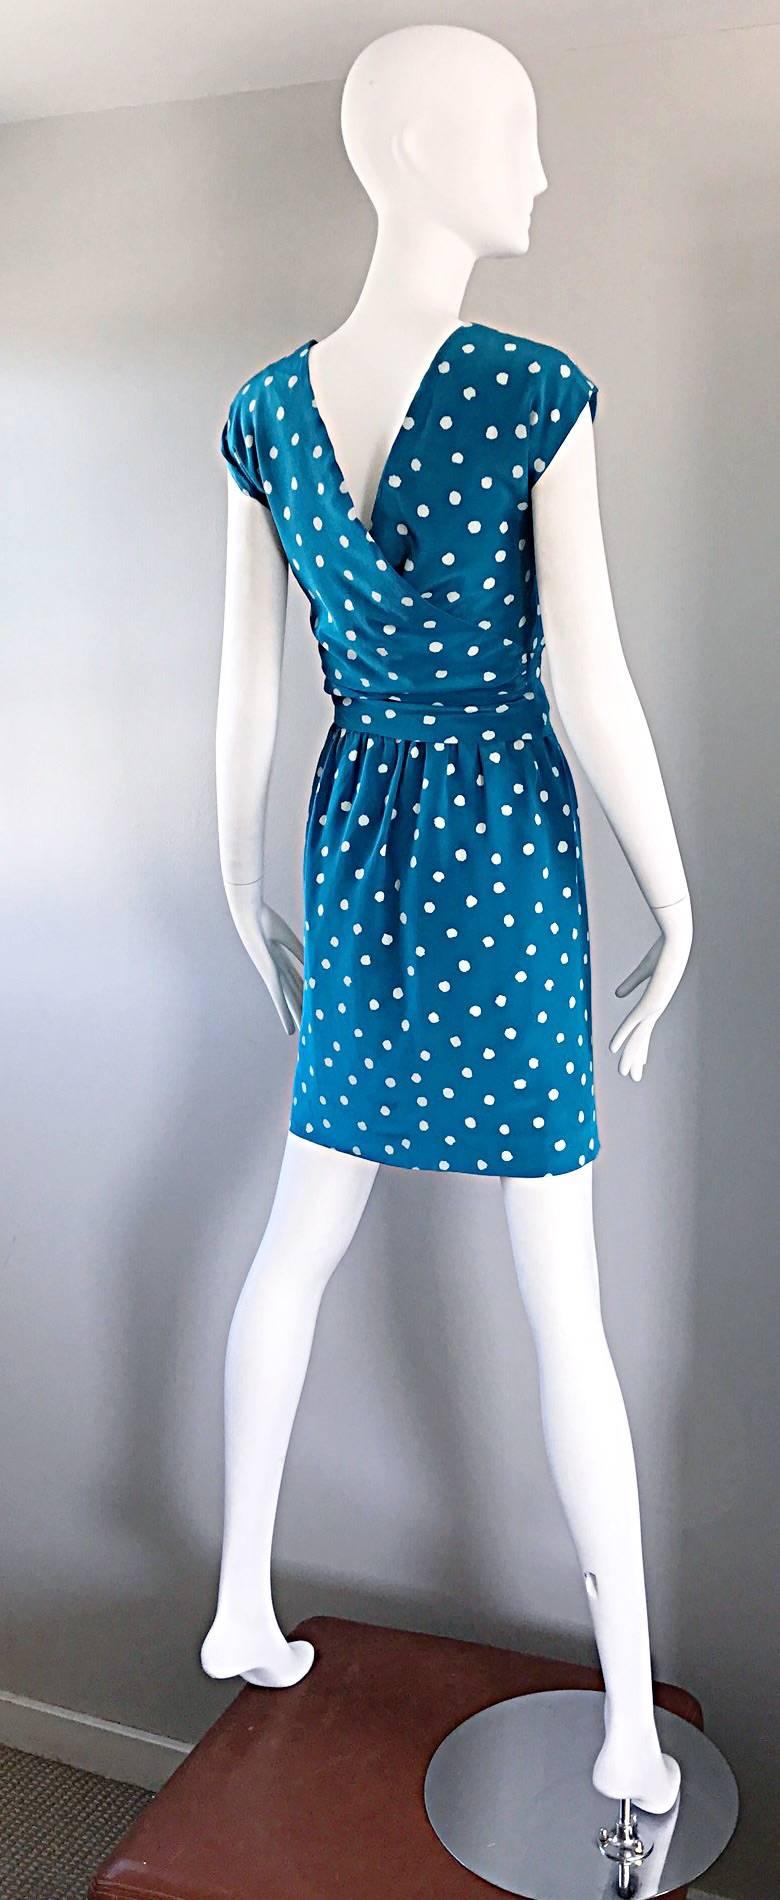 Women's Vintage Oscar de la Renta Bright Blue and White Polka Dot Dress Ensemble Size 4 For Sale